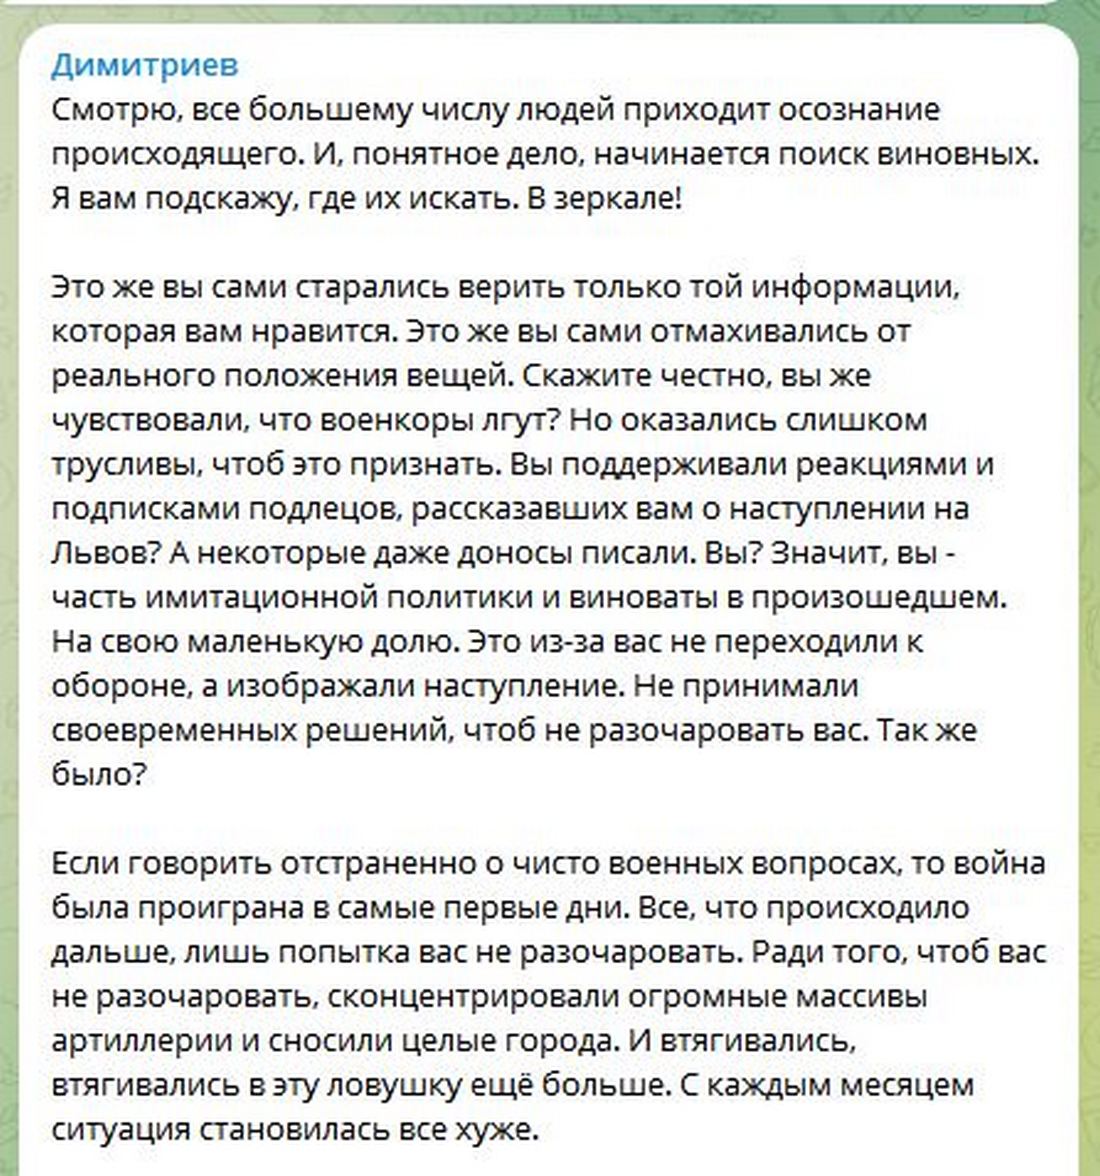 «Війна була програна в перші дні» - російський блогер Дімітрієв